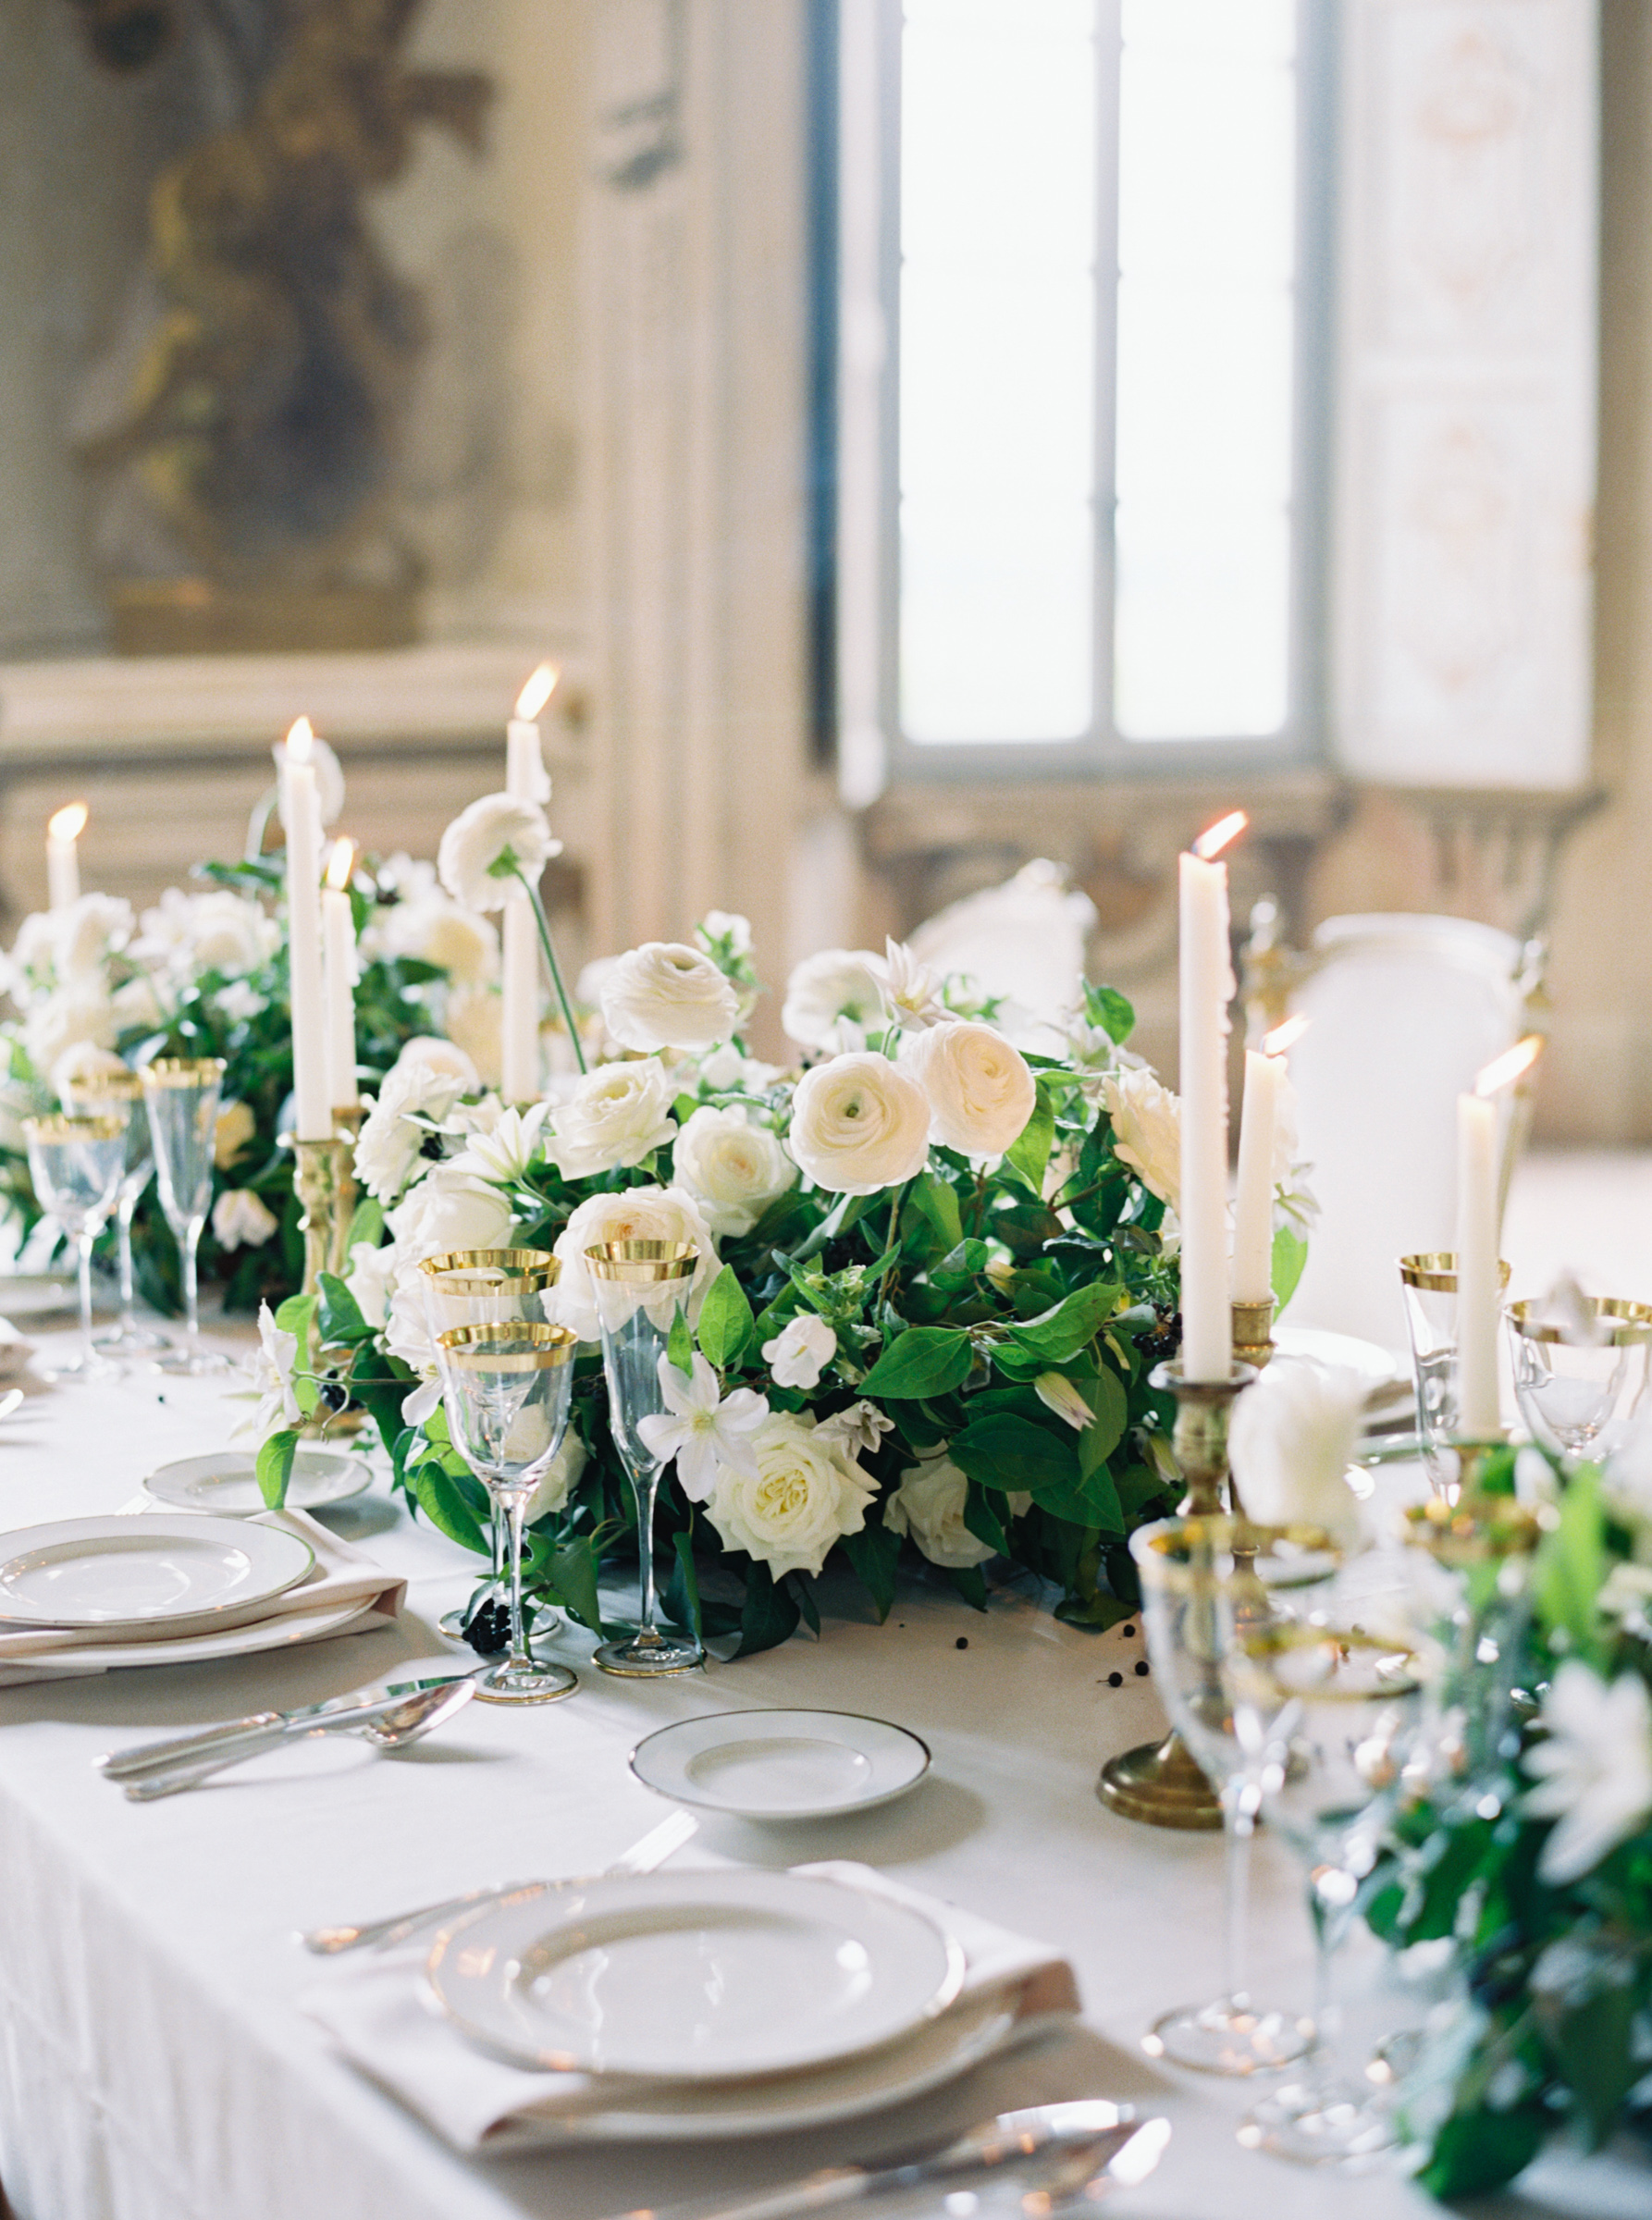 centerpieces of villa arconati wedding table